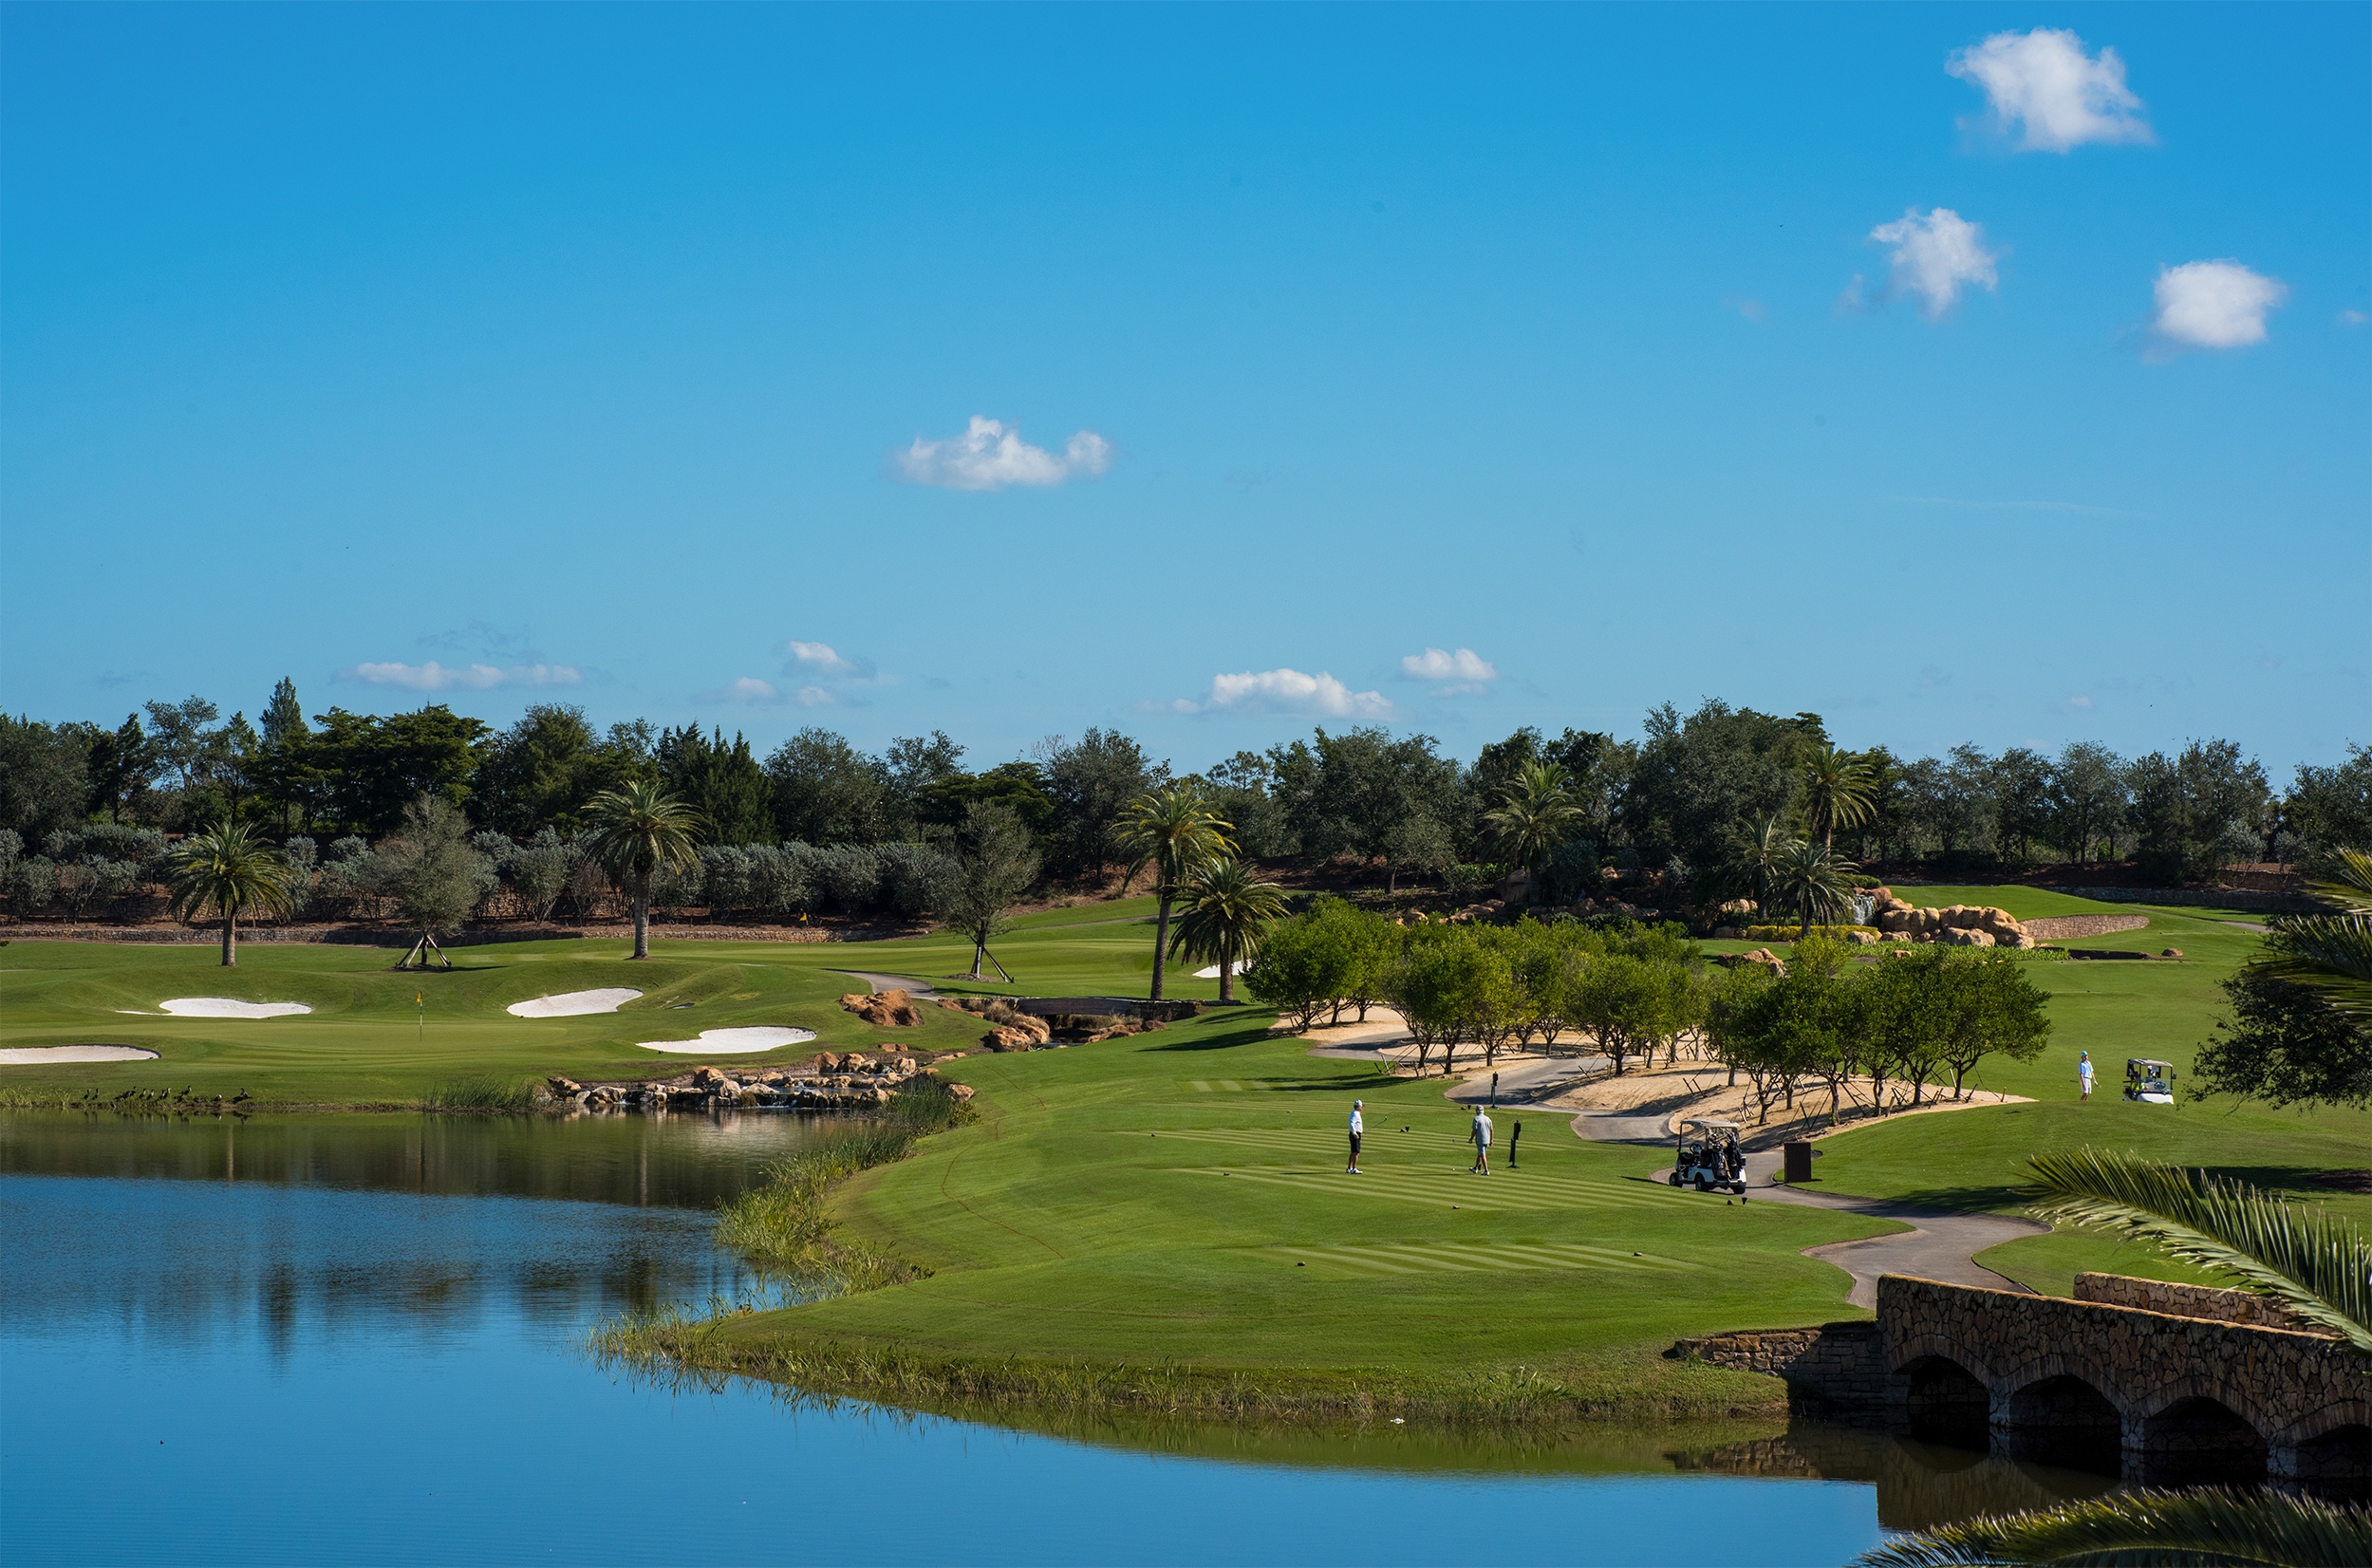 Talis Park golf courses